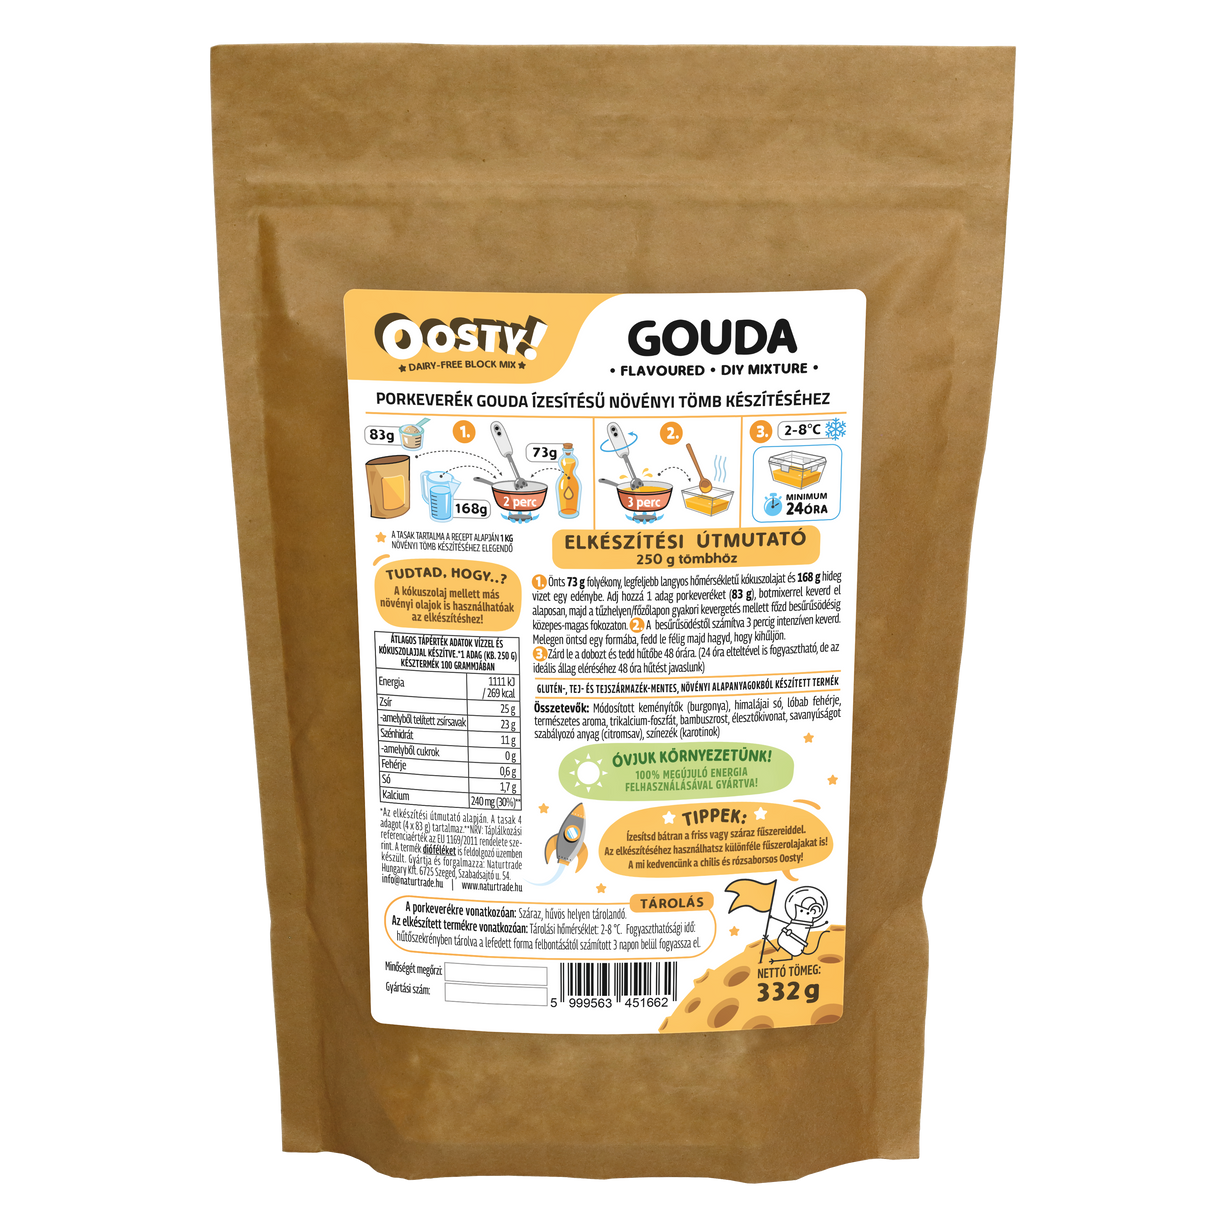 Oosty Gouda ízű növényi alap mix 332g